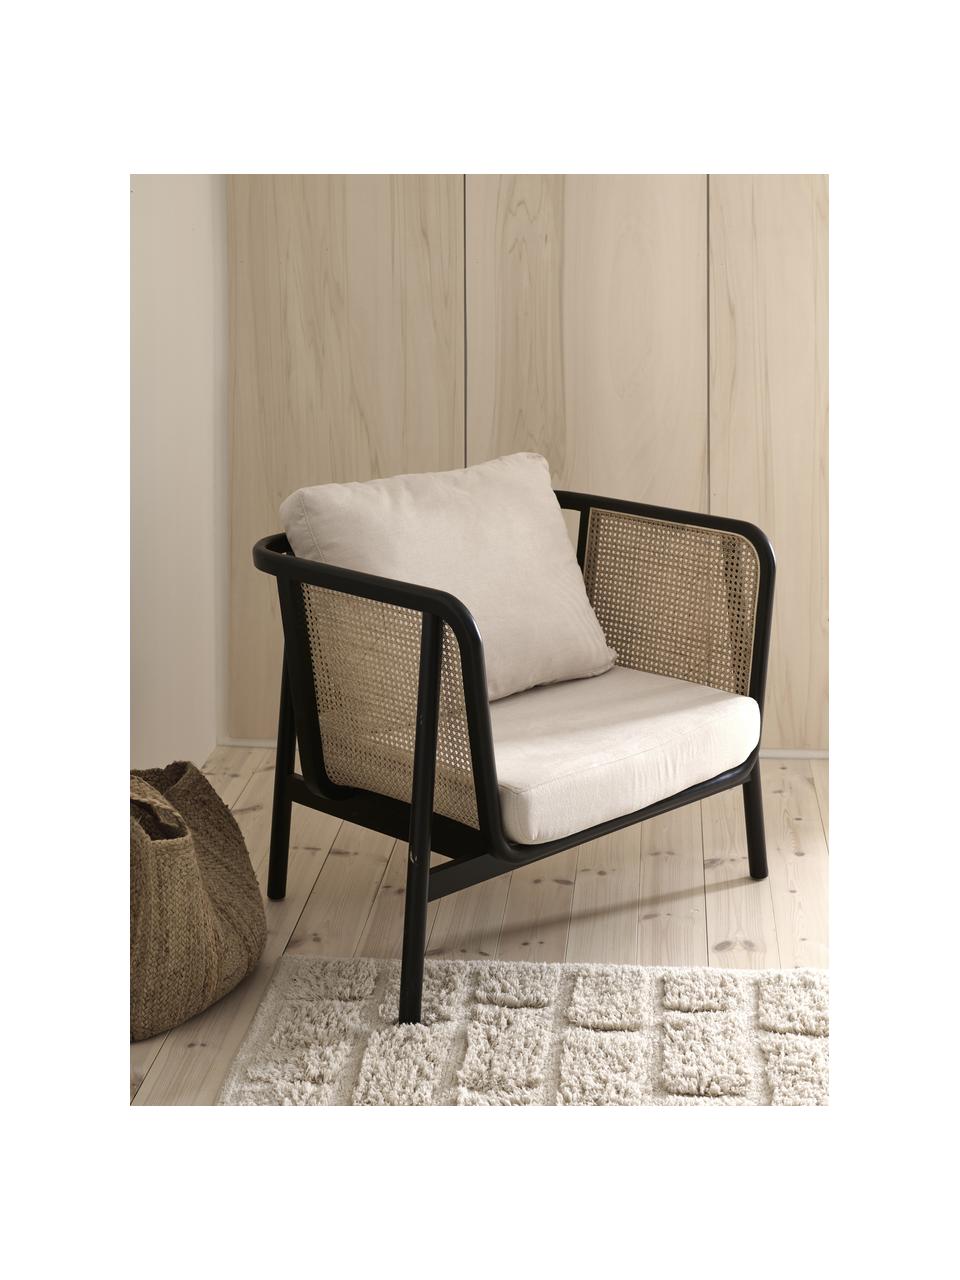 Fotel wypoczynkowy z rattanu Callo, Tapicerka: 100% poliester, Stelaż: drewno bukowe lakierowane, Kremowobiała tkanina, drewno bukowe lakierowane na czarno, S 106 x G 79 cm